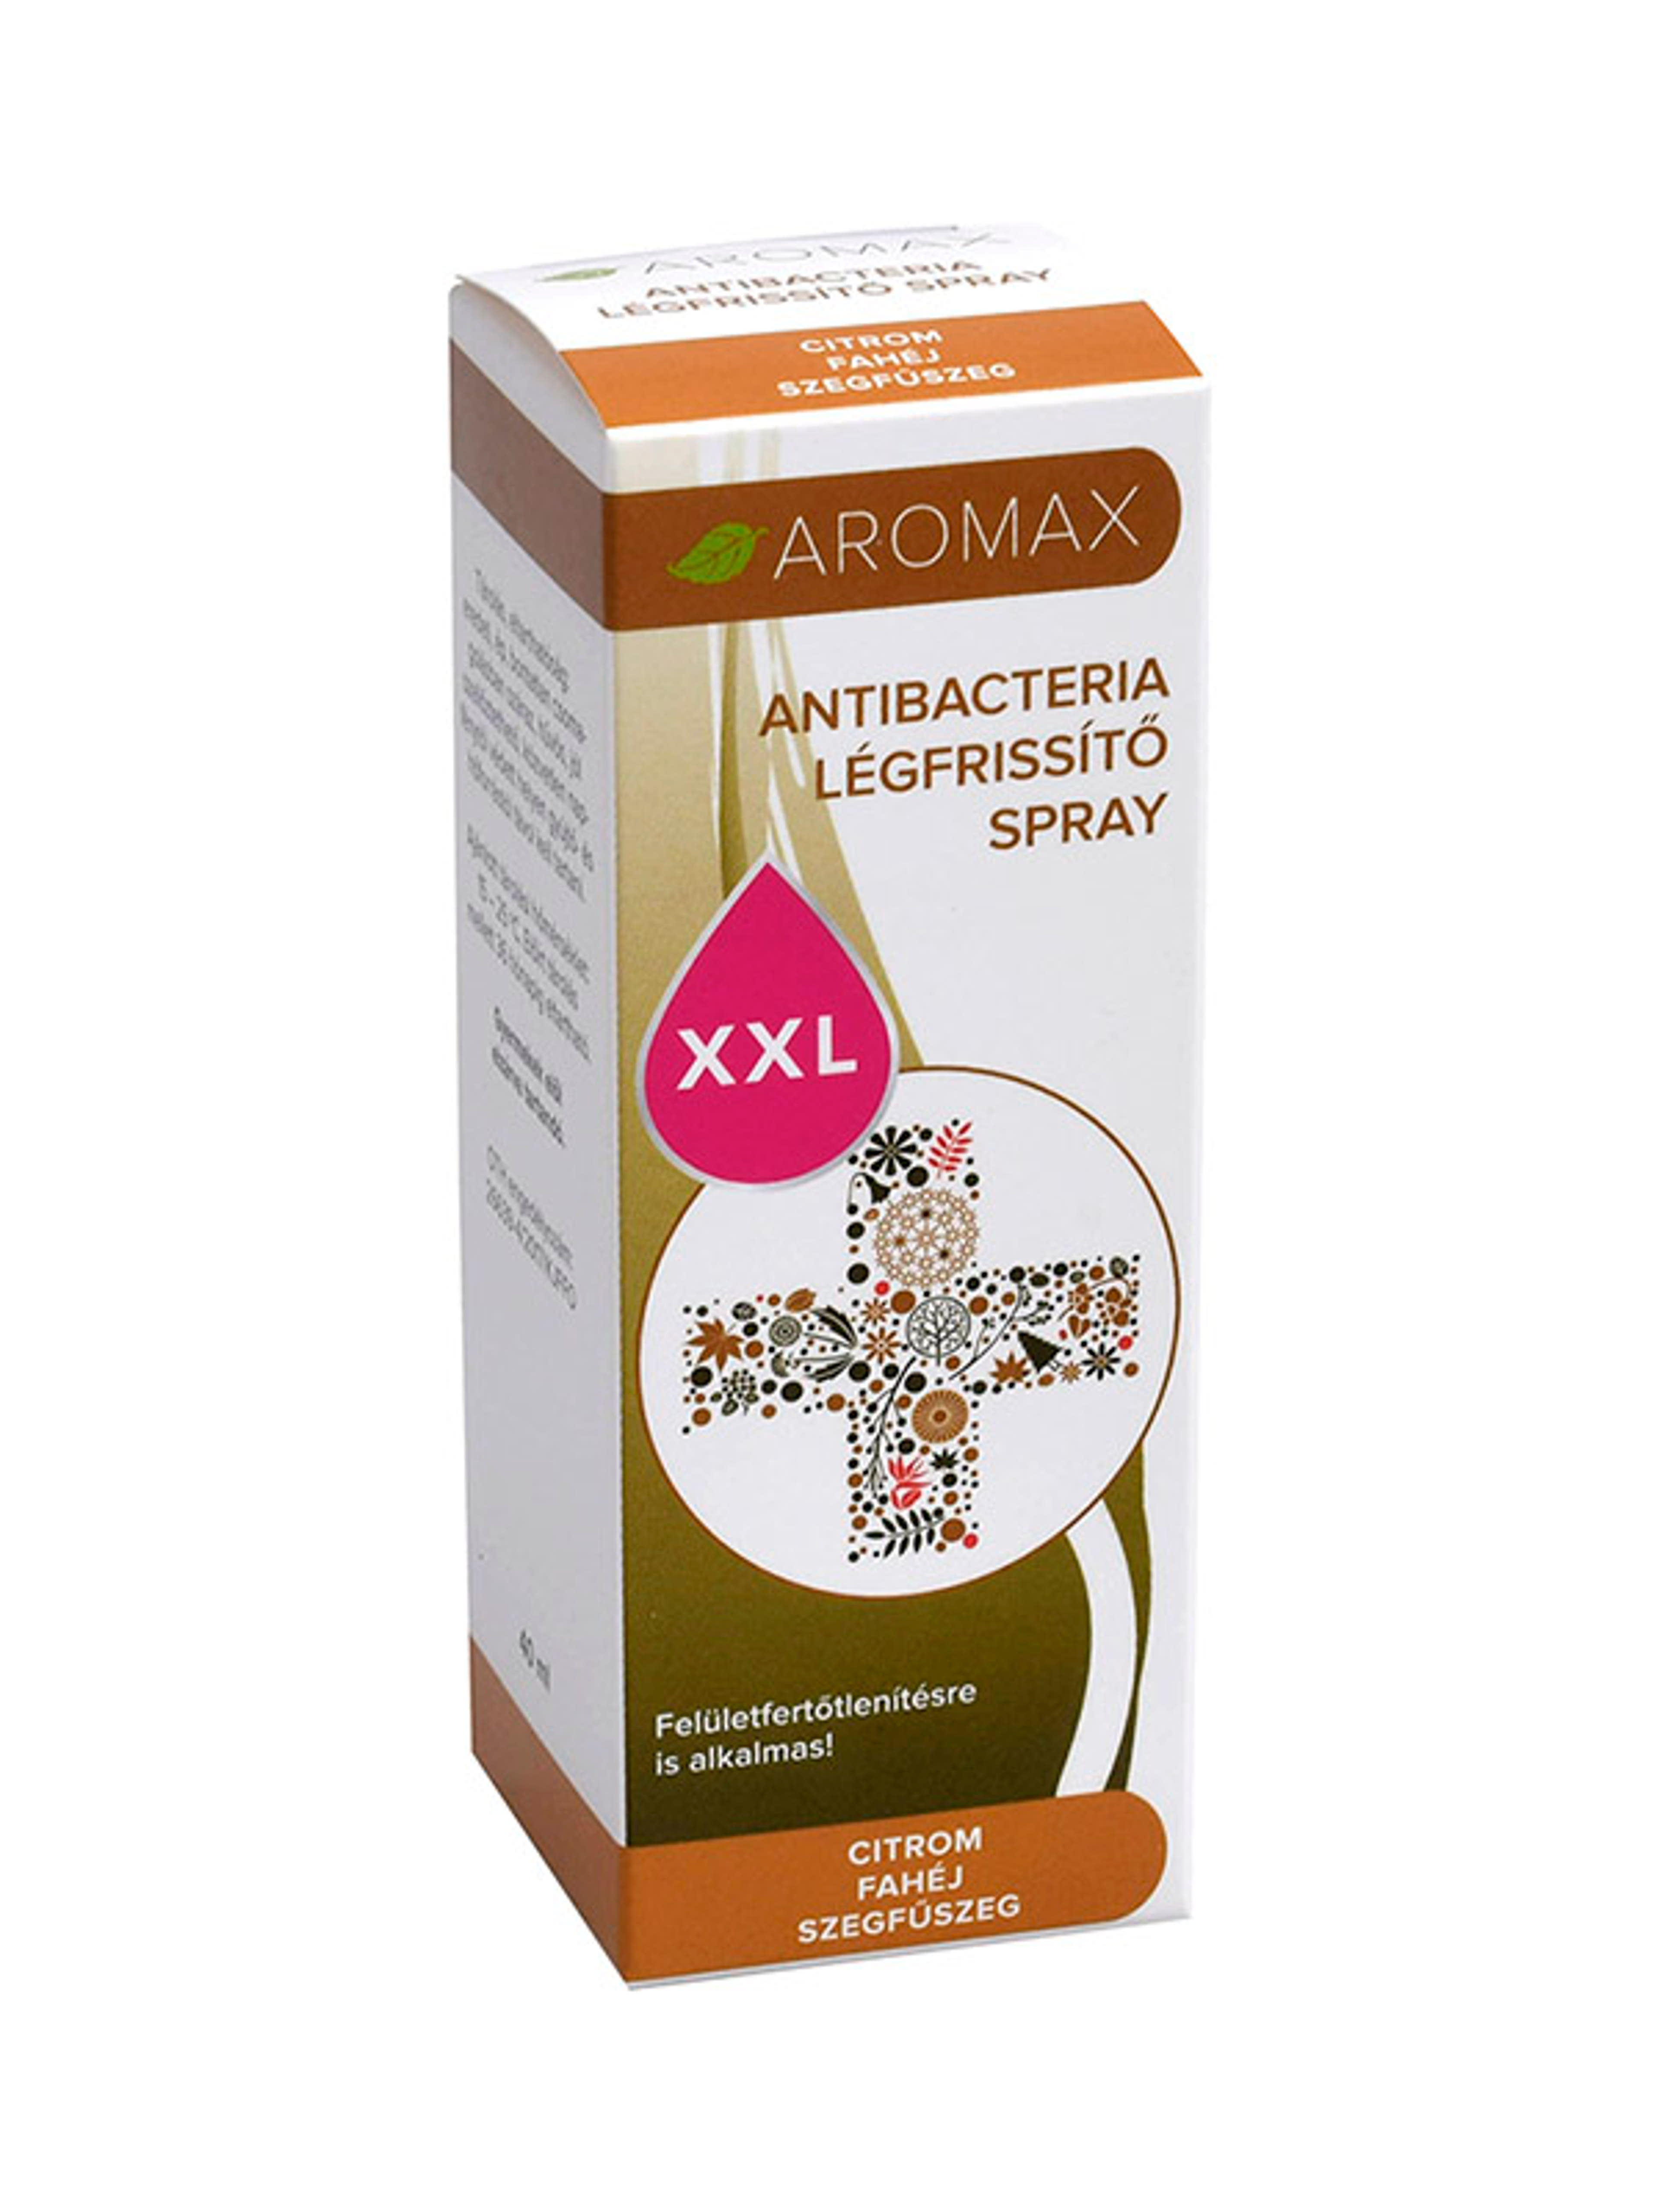 Aromax antibakteriális spray citrom-fahéj-szegfűszeg xxl - 40 ml-1